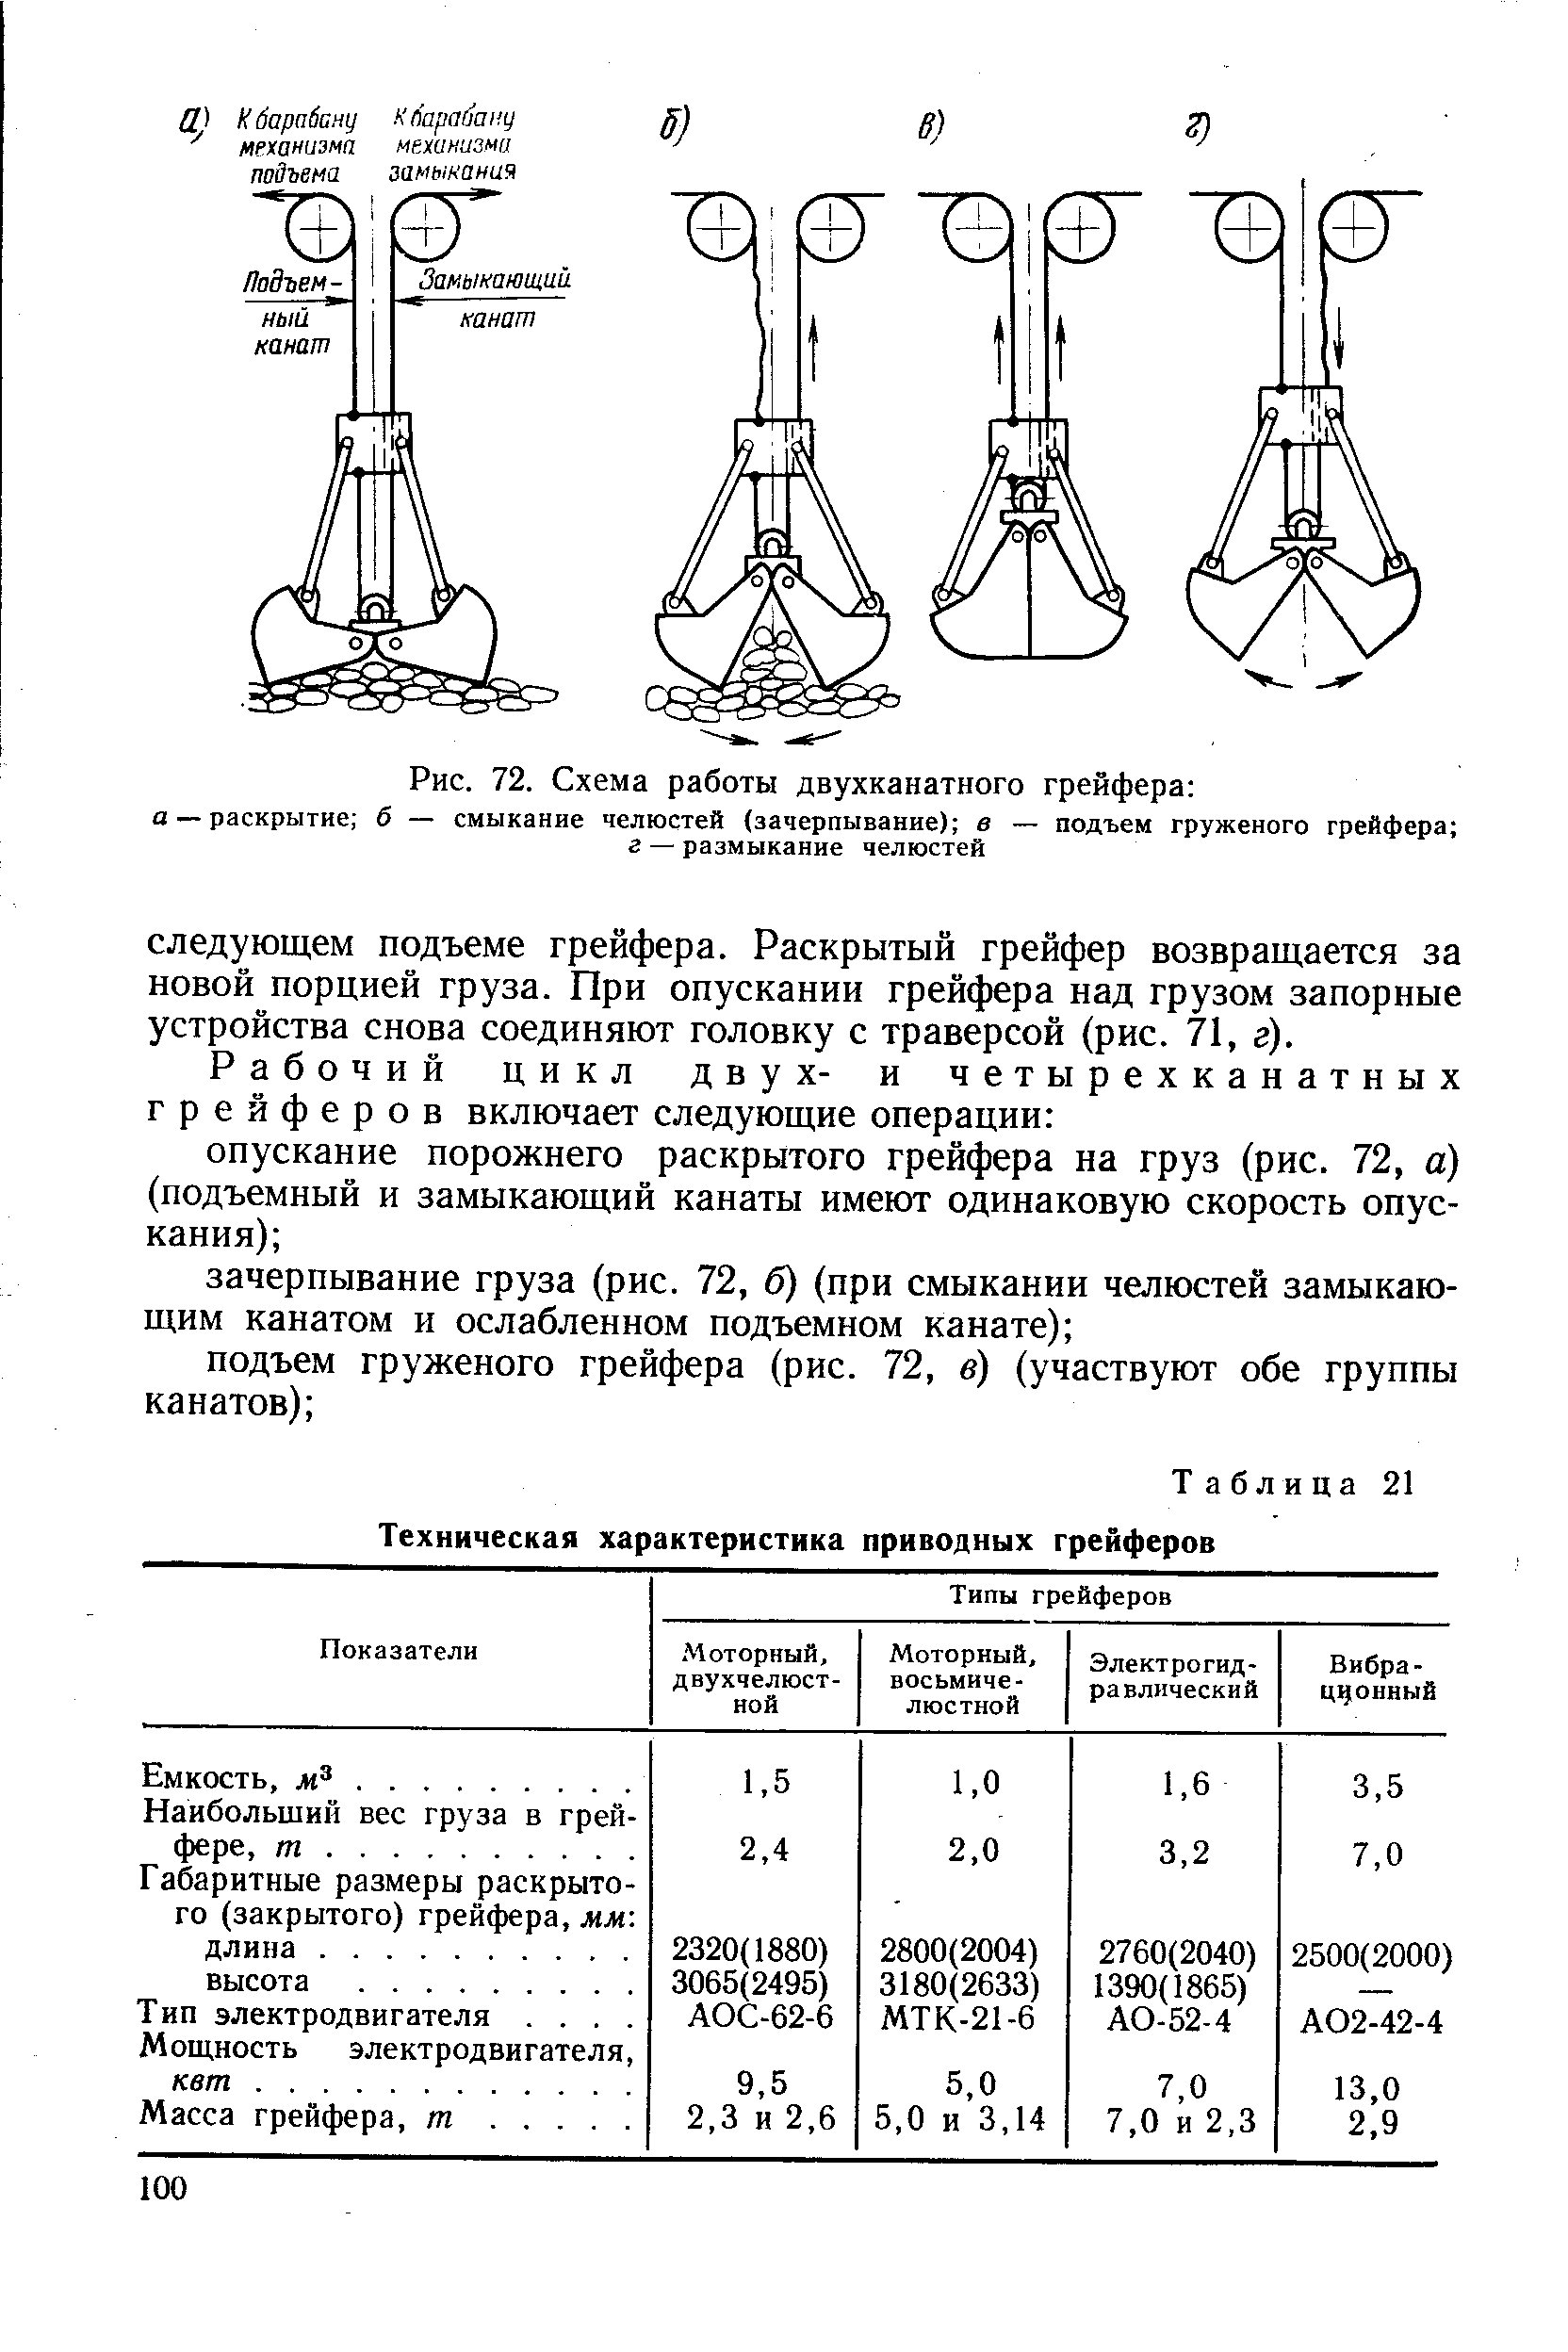 Таблица 21 Техническая характеристика приводных грейферов
